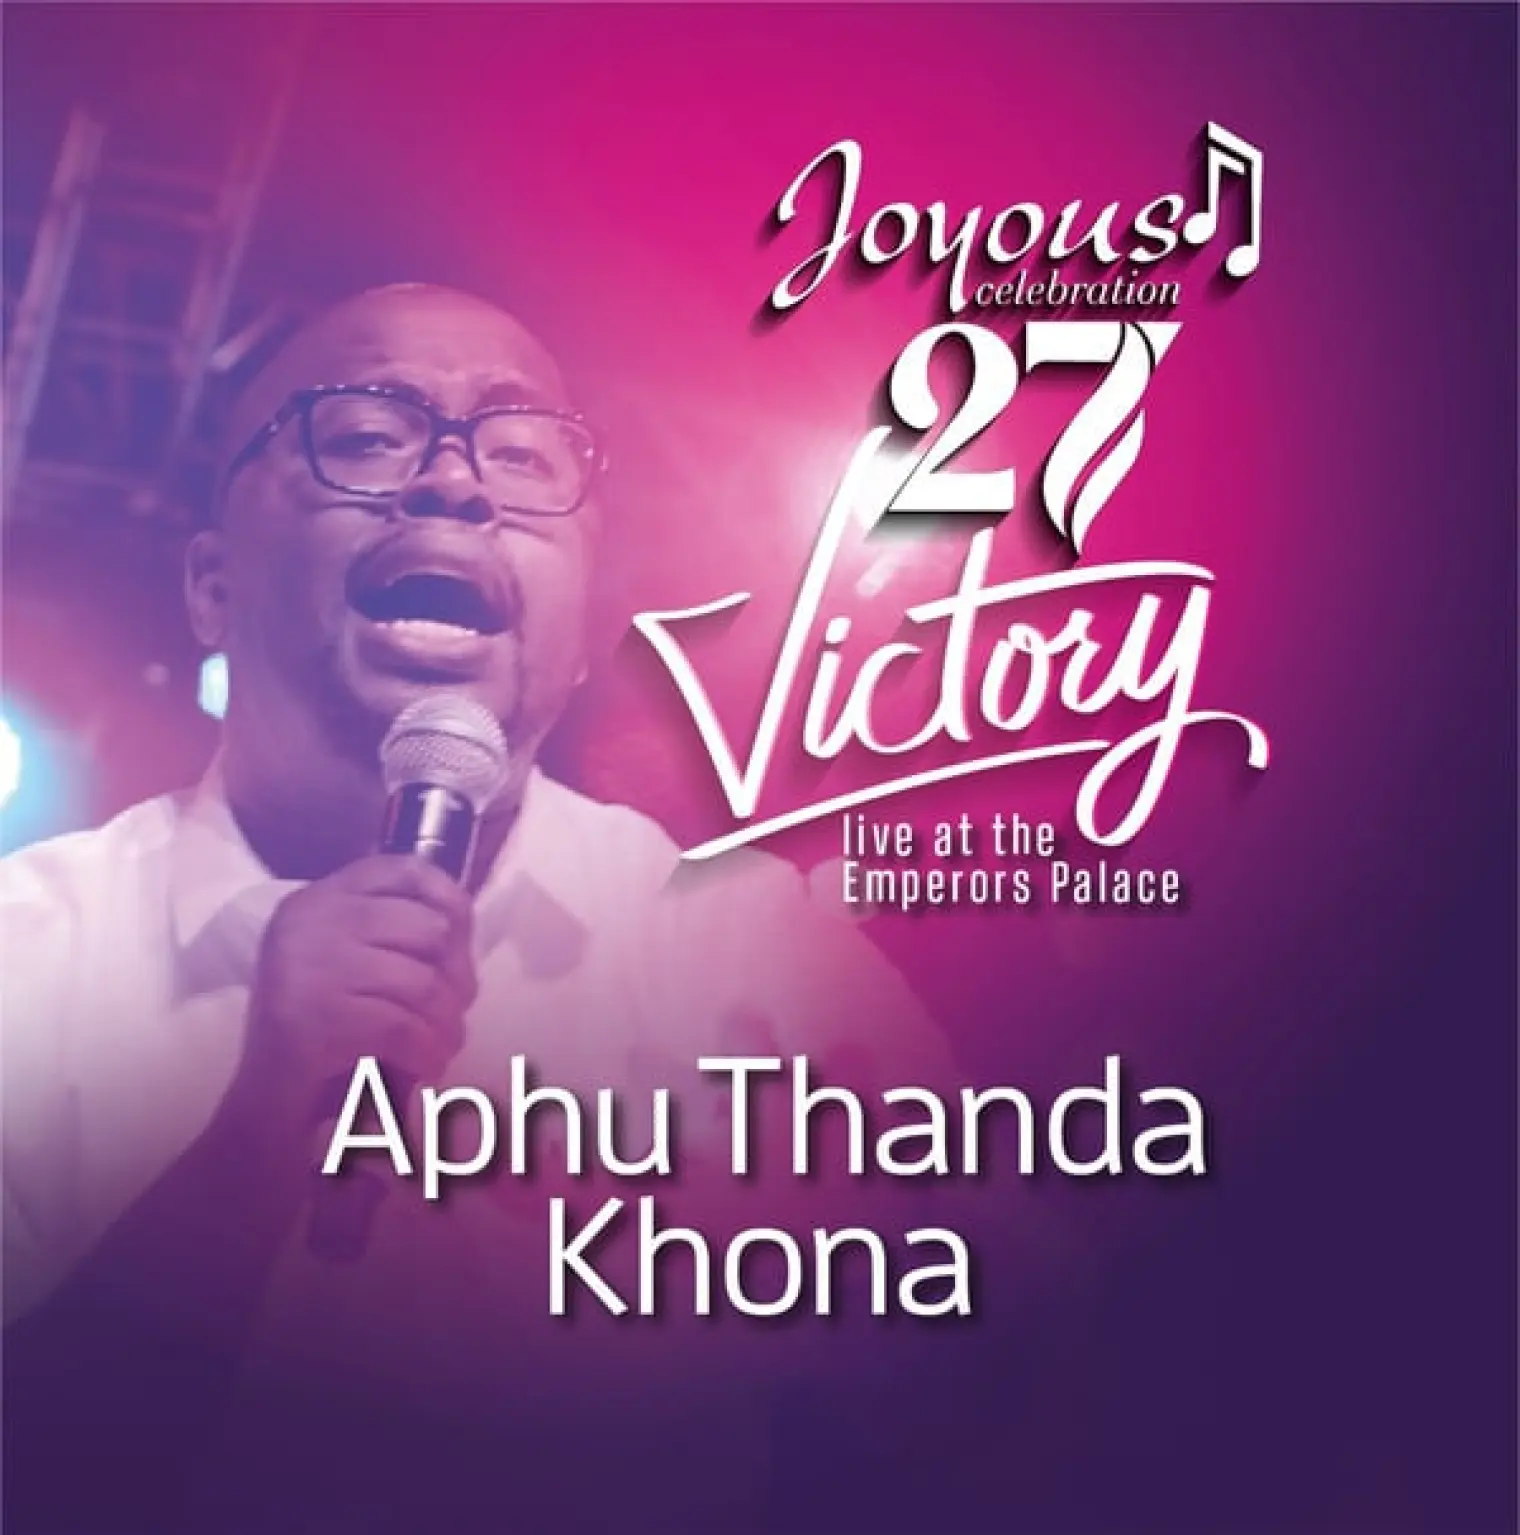 Aphu Thanda Khona -  Joyous Celebration 